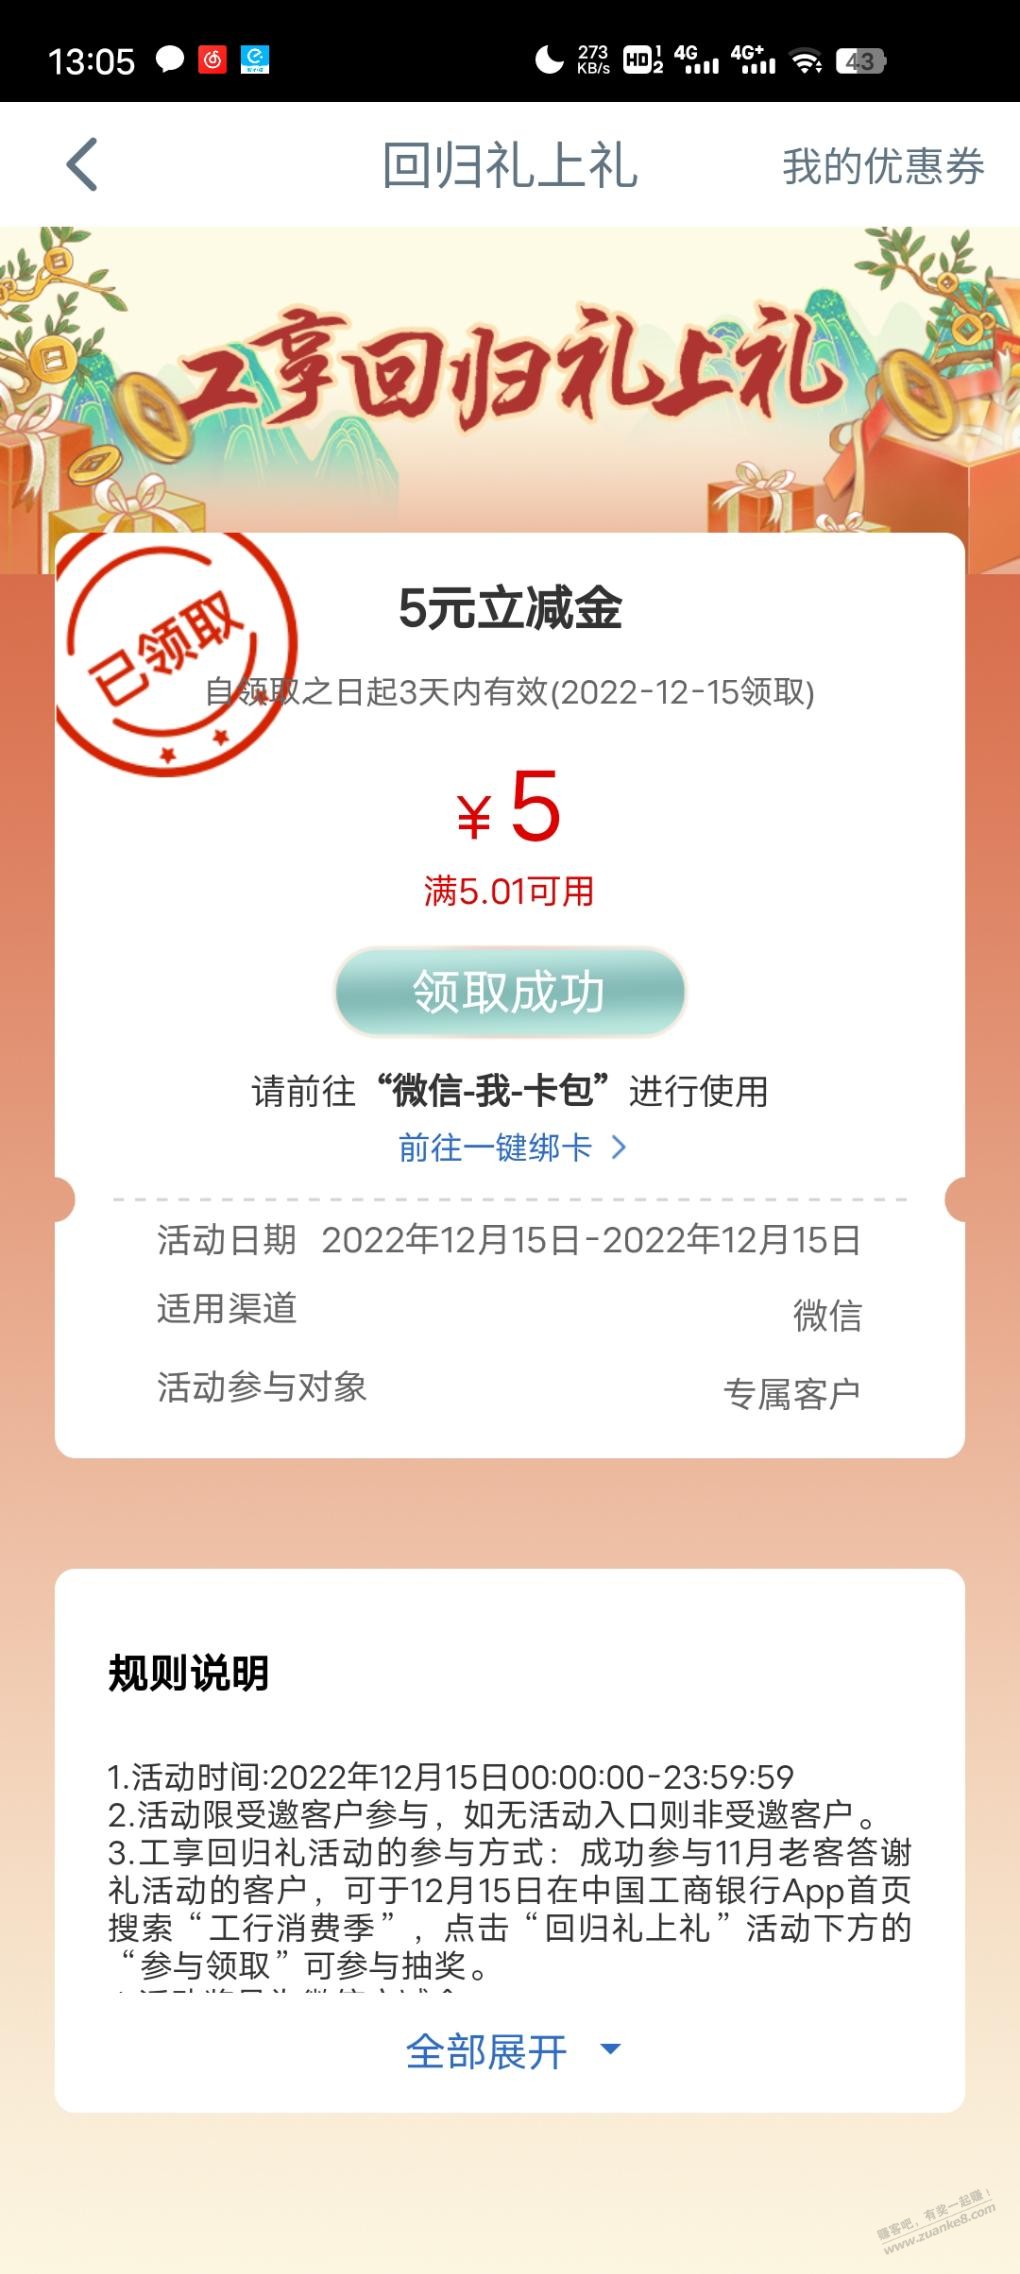 工行5.01-5不清楚和50-5 限江苏-惠小助(52huixz.com)